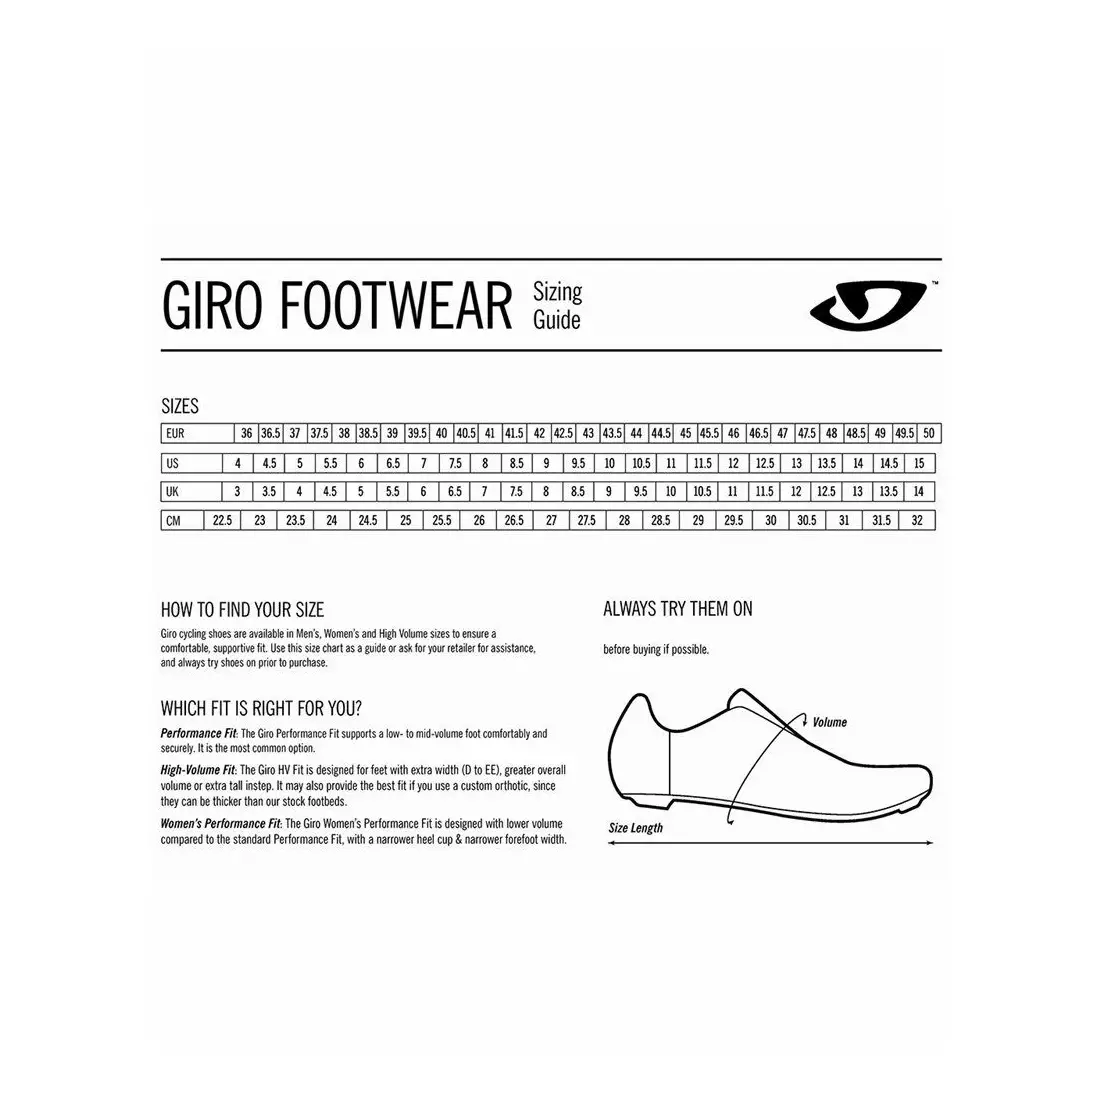 GIRO pánska cyklistická obuv EMPIRE black GR-7110729